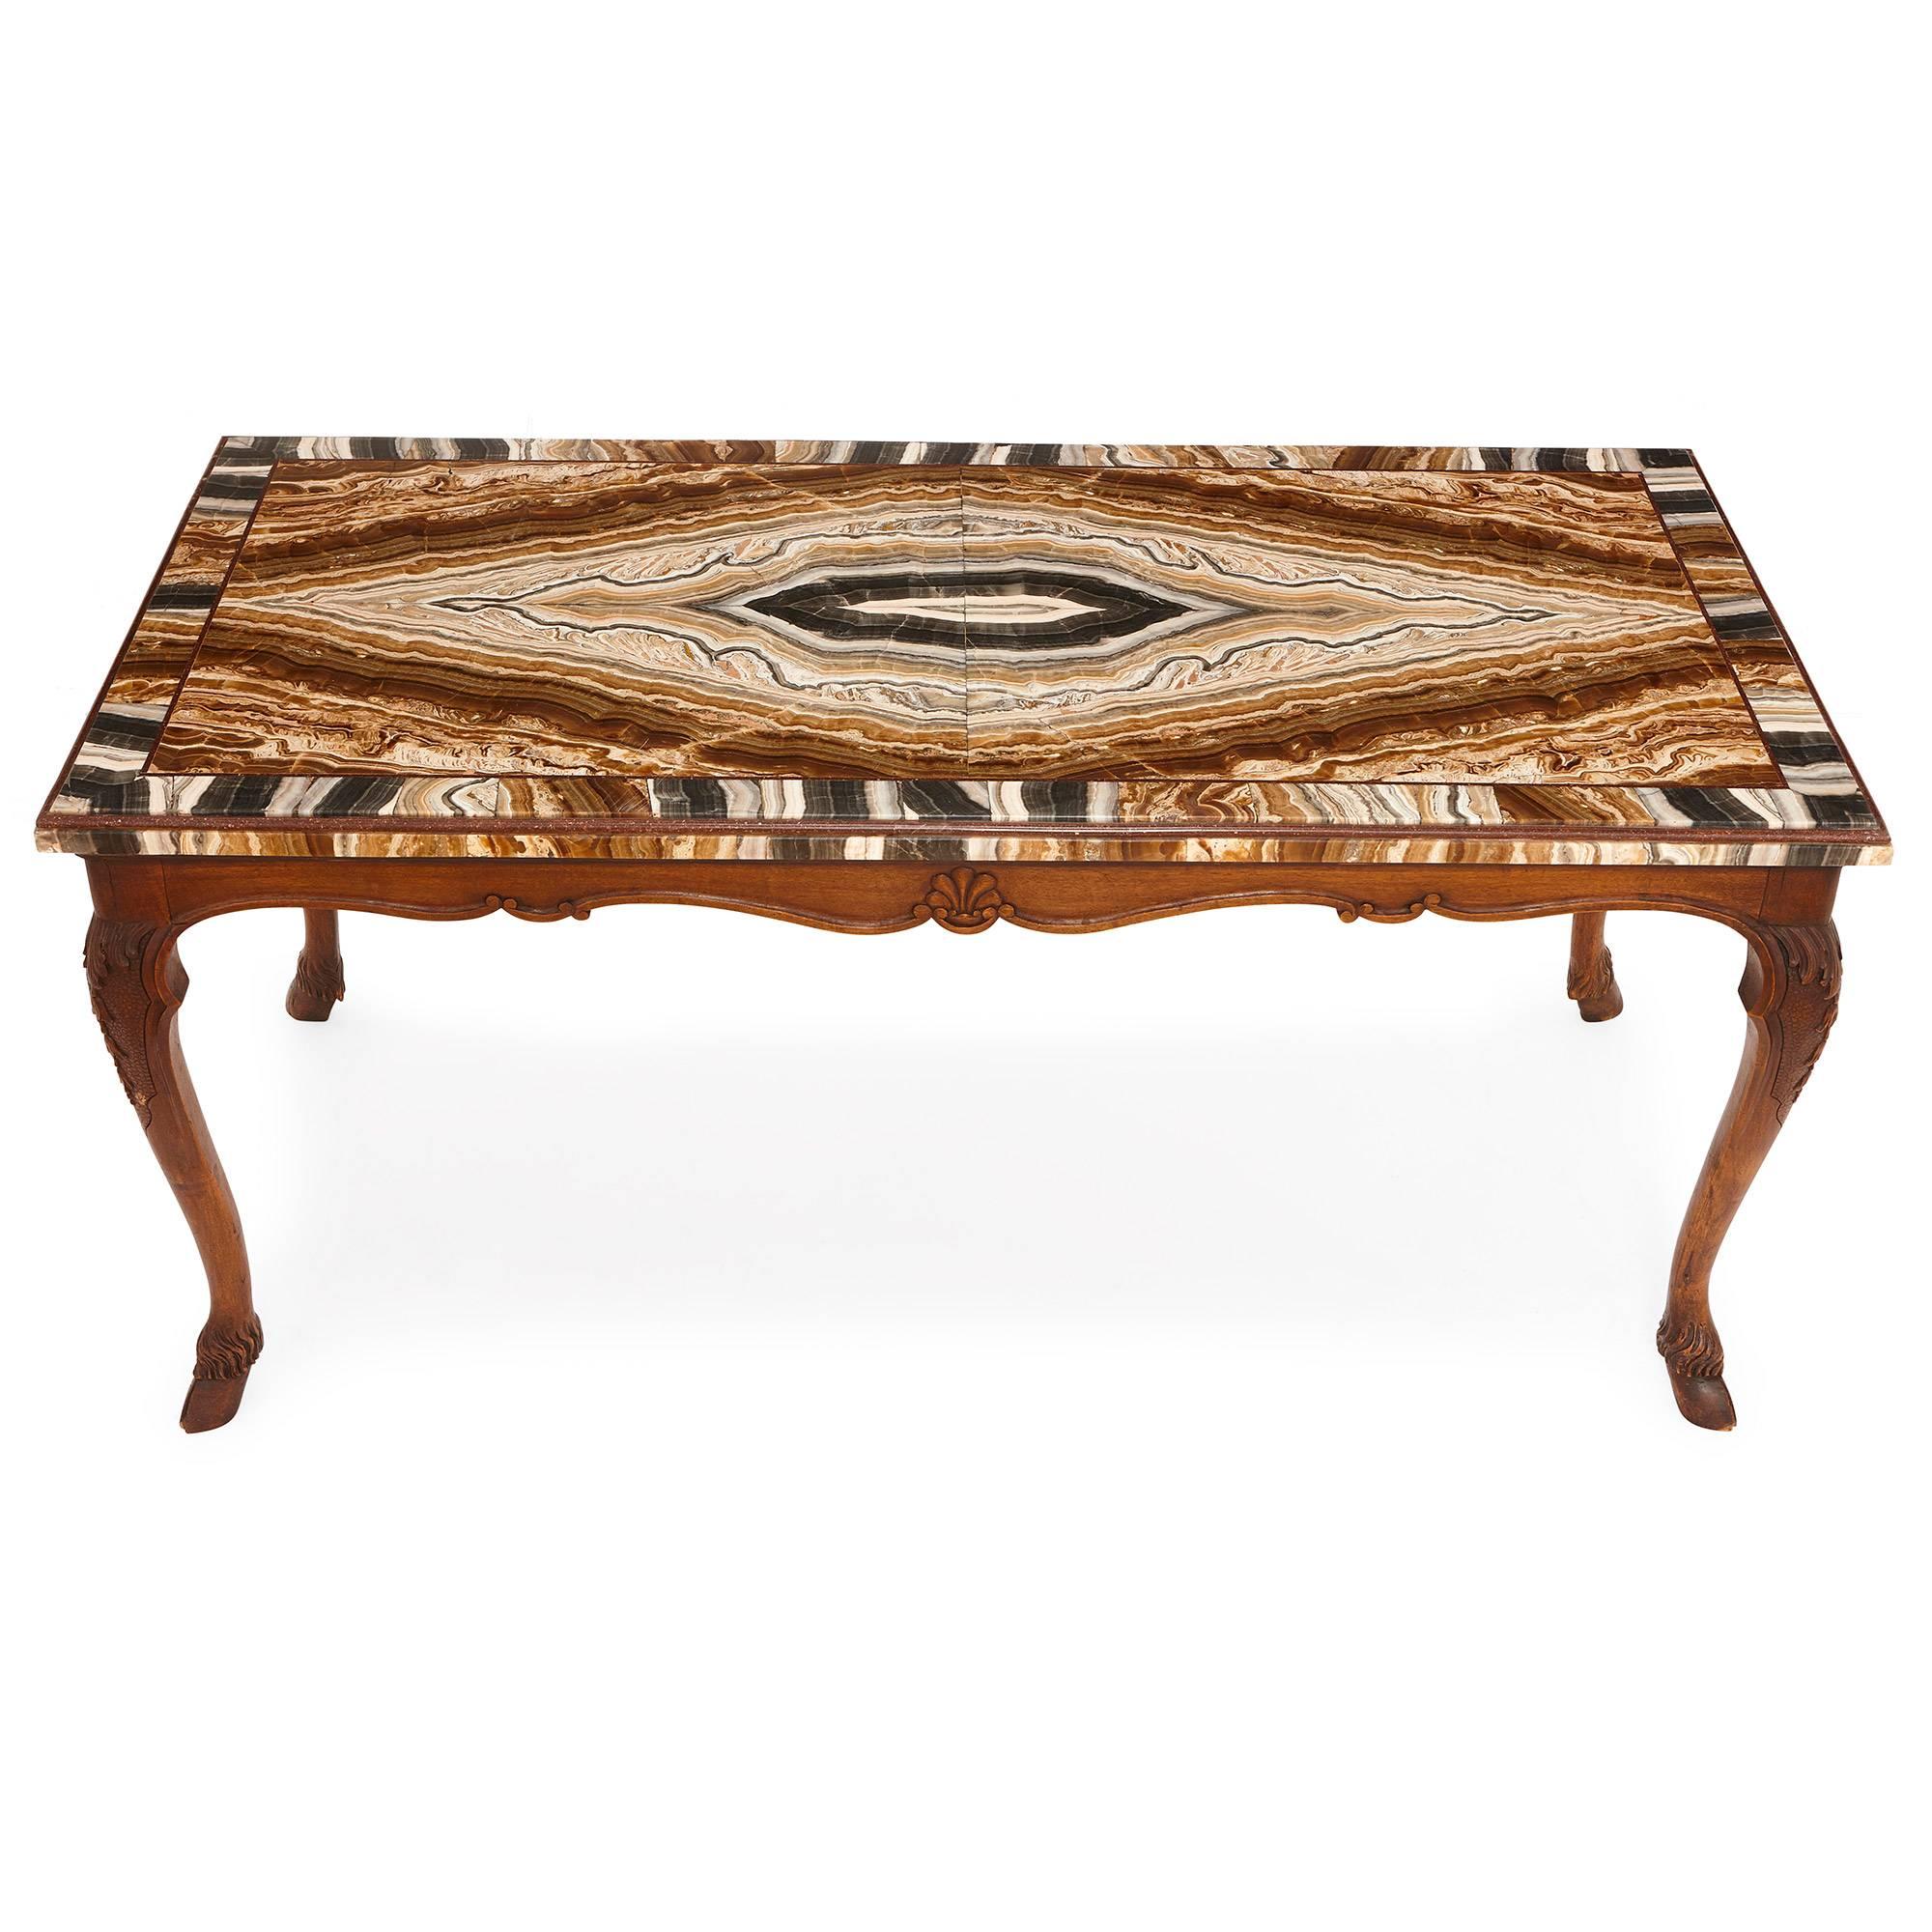 Cette table basse a été créée en Italie au XVIIIe siècle. Il présente un plateau rectangulaire en onyx et bordé de porphyre. Ce plateau de table est composé de bandes de couleurs, dont le noir, le gris, le blanc, le marron et l'orange. Ce plateau